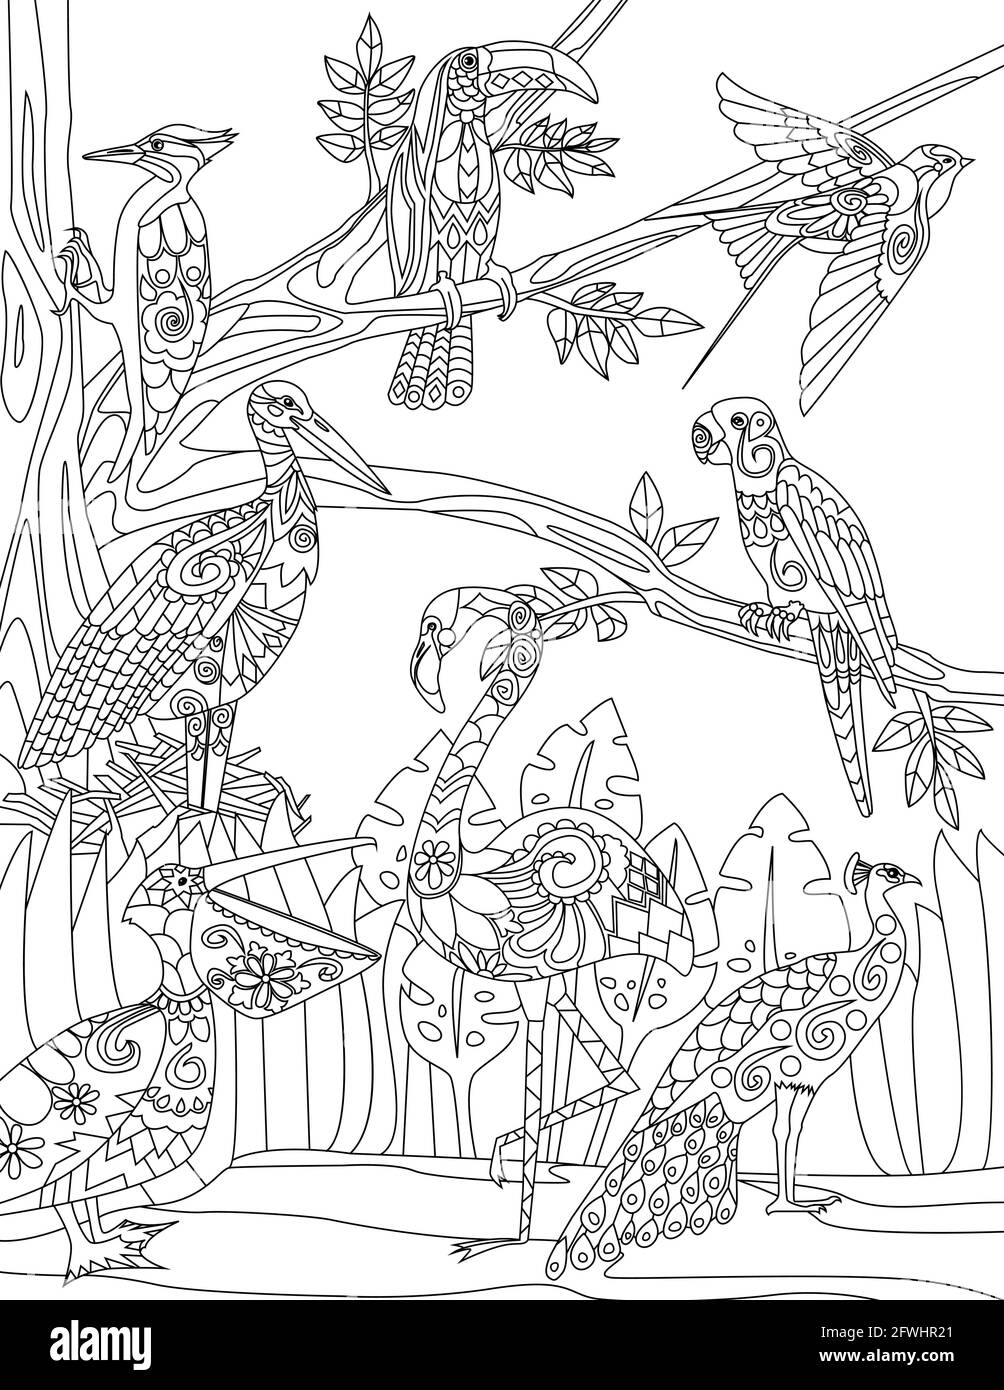 Tropische Vögel kritzeln auf Bäumen, Handzeichnung Pelican Flamingo auf Baum Illustration, Wildlife line Design, Umriss Wald Design, Pfau Skizze. Stock Vektor